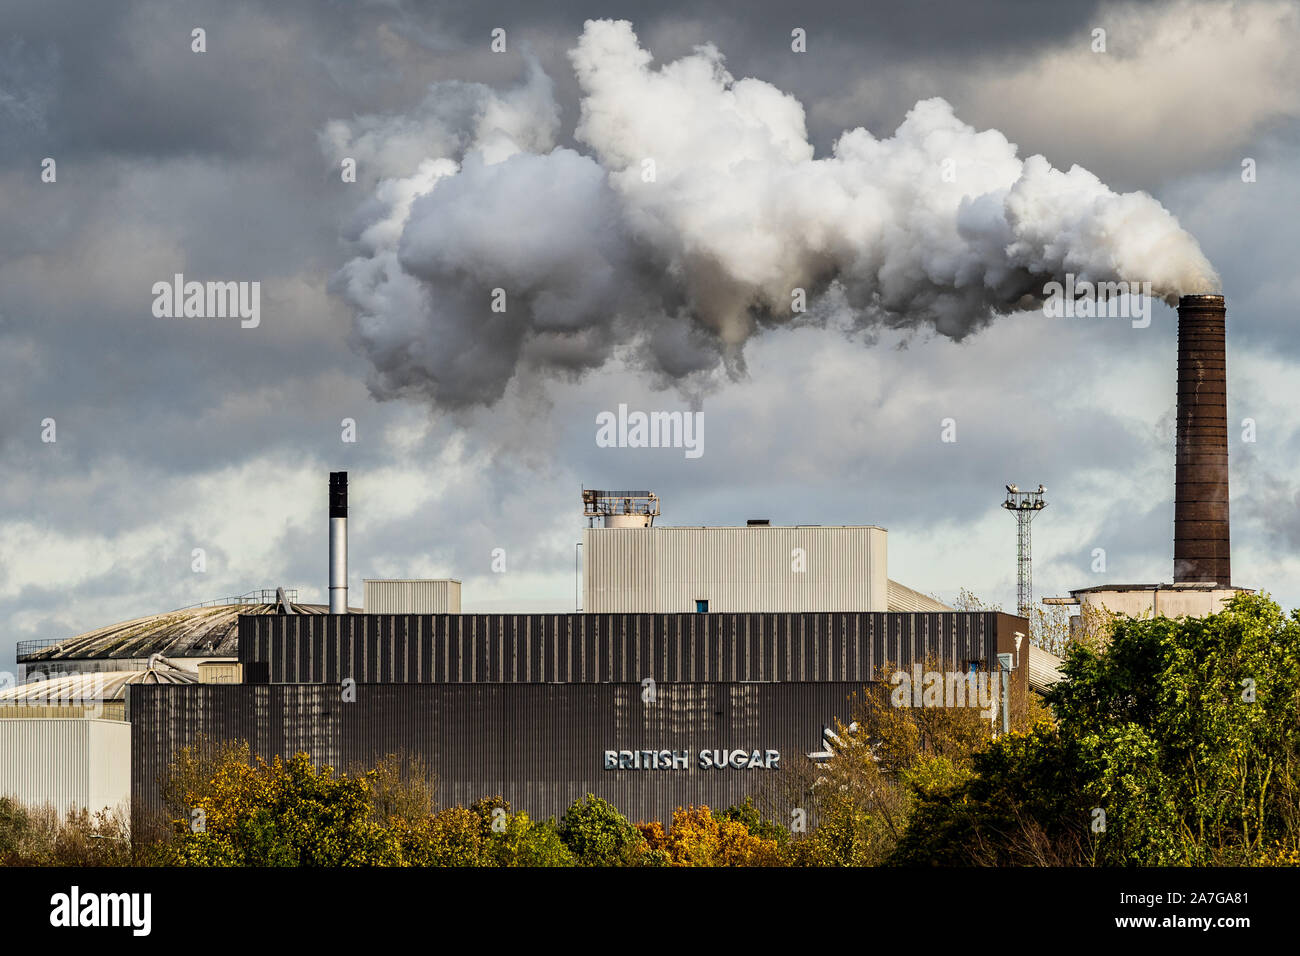 Emisiones de la fábrica del Reino Unido - chimeneas de la fábrica de remolacha azucarera - el vapor se eleva de la fábrica británica de azúcar en Bury St Edmunds Suffolk, Reino Unido Foto de stock